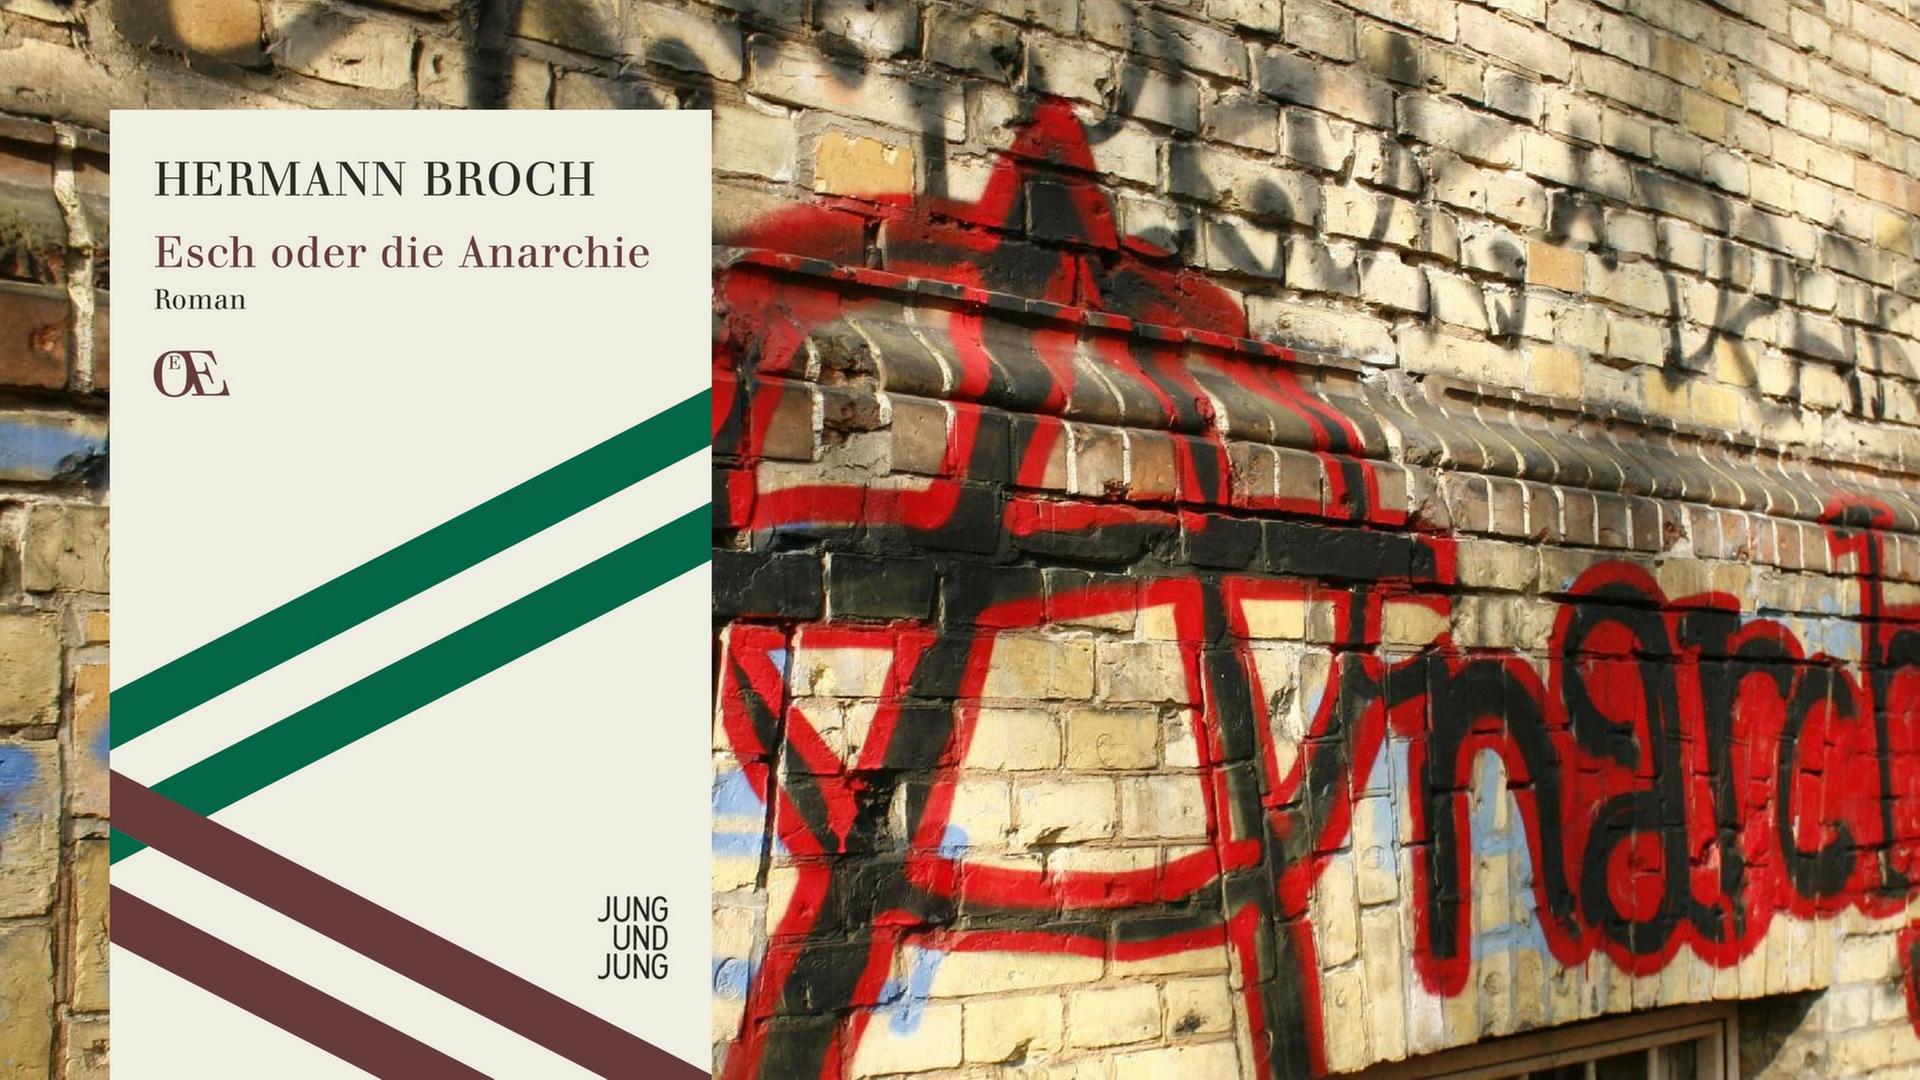 Buchcover: Hermann Broch: "Esch oder die Anarchie"